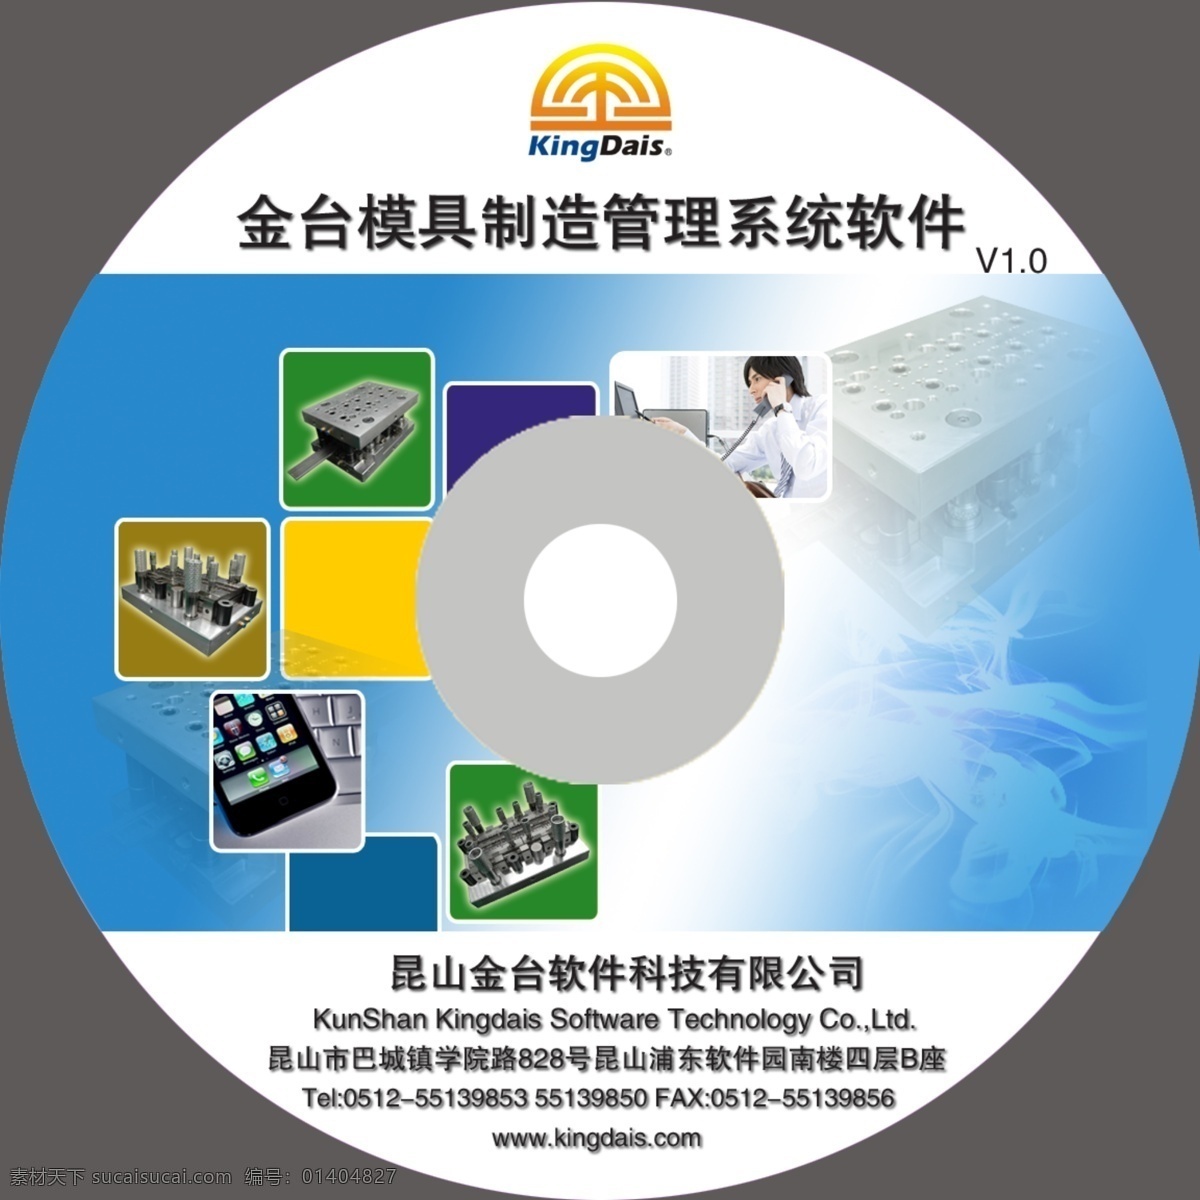 光盘封面设计 矢量图 源文件 光盘 科技 模具 电子 系统 包装 包装设计 广告设计模板